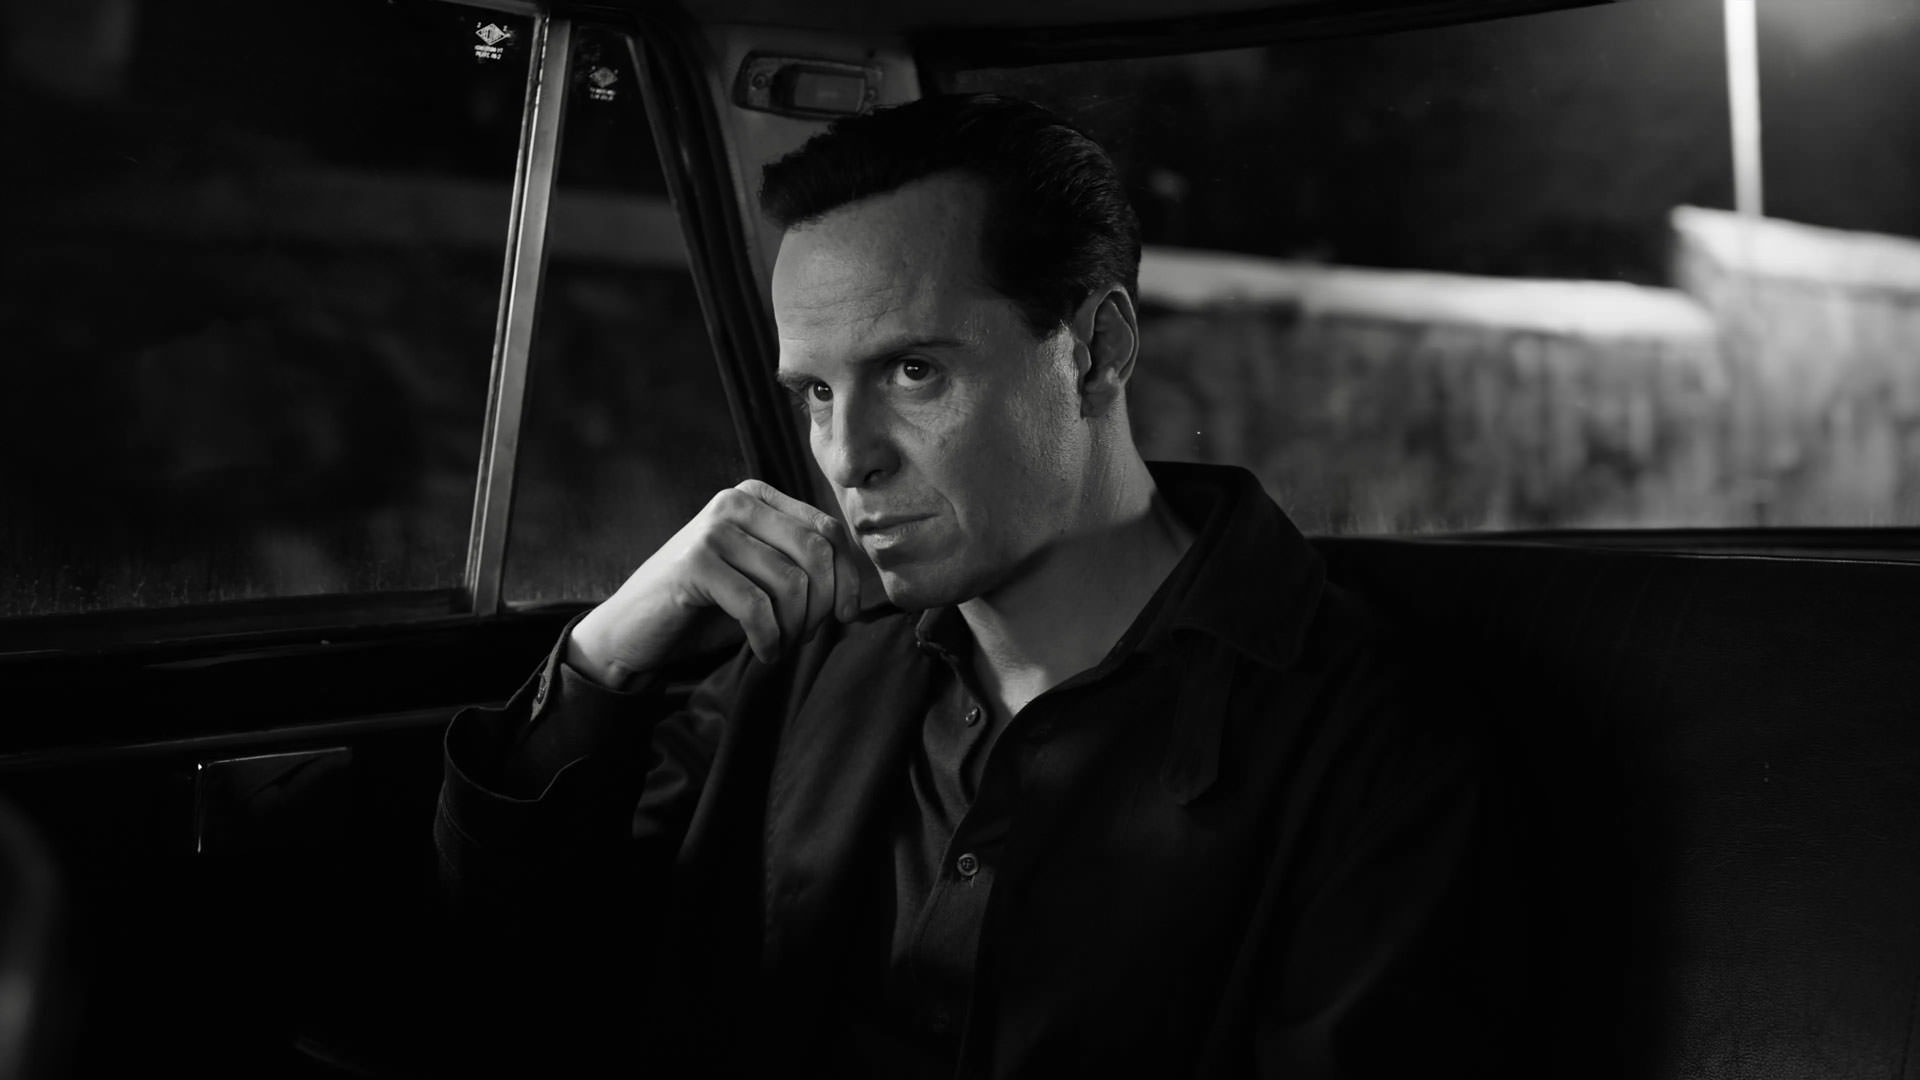 اندرو اسکات نشسته داخل یک ماشین در عکسی سیاه و سفید از سریال ریپلی به کارگردانی استیون زایلیان